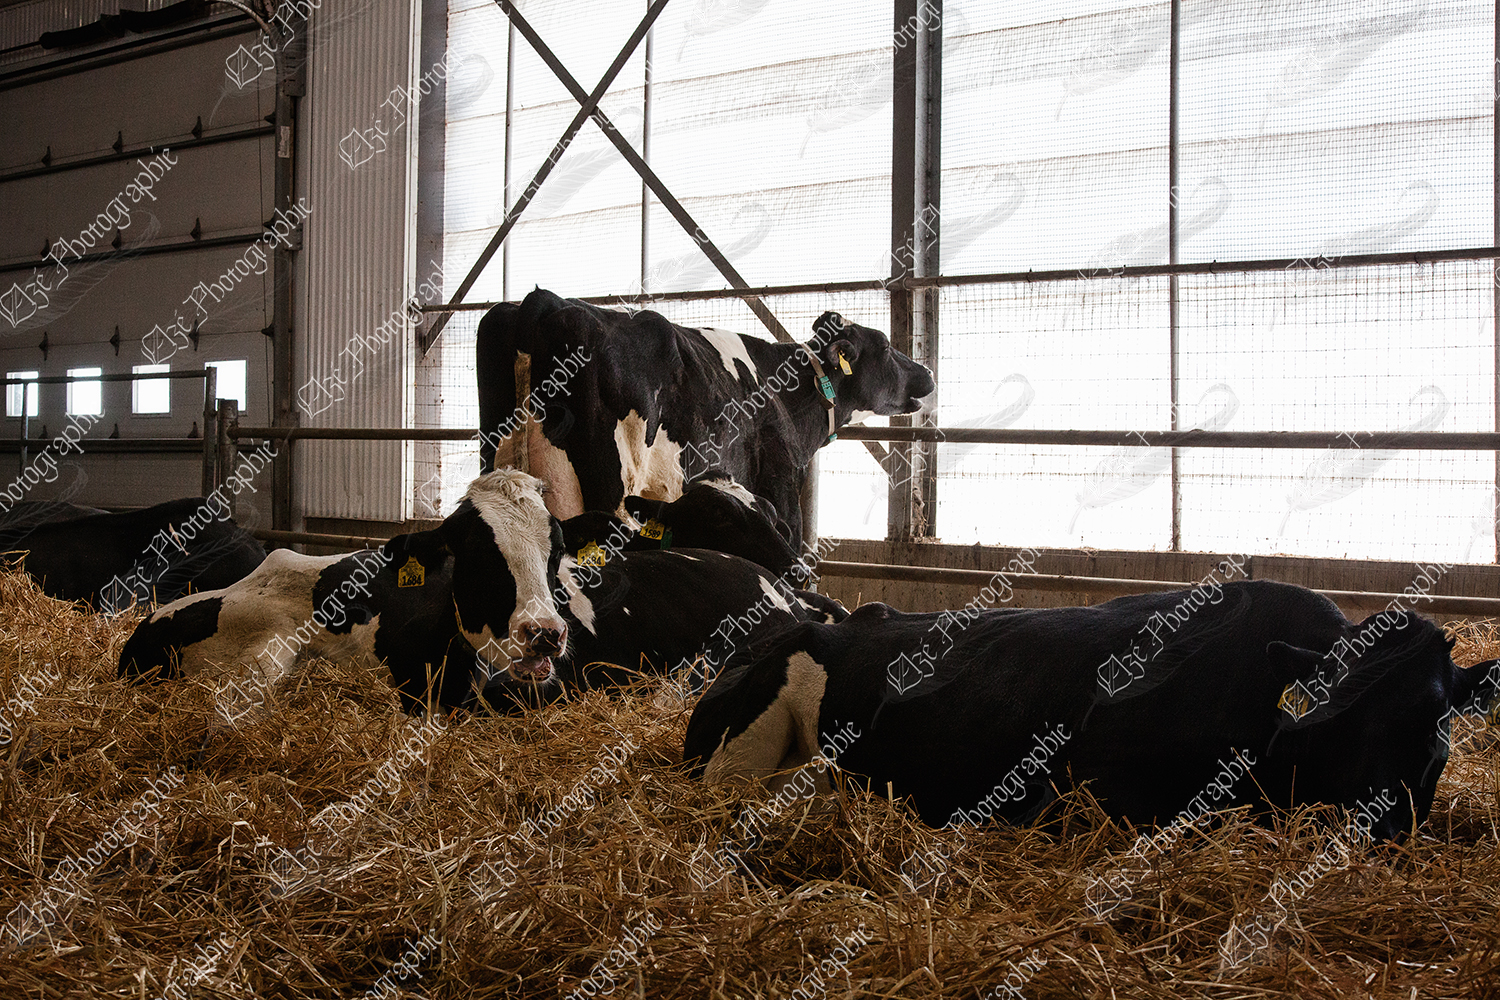 elze_photo_6064_parc_velage_vaches_dairy_farm_group